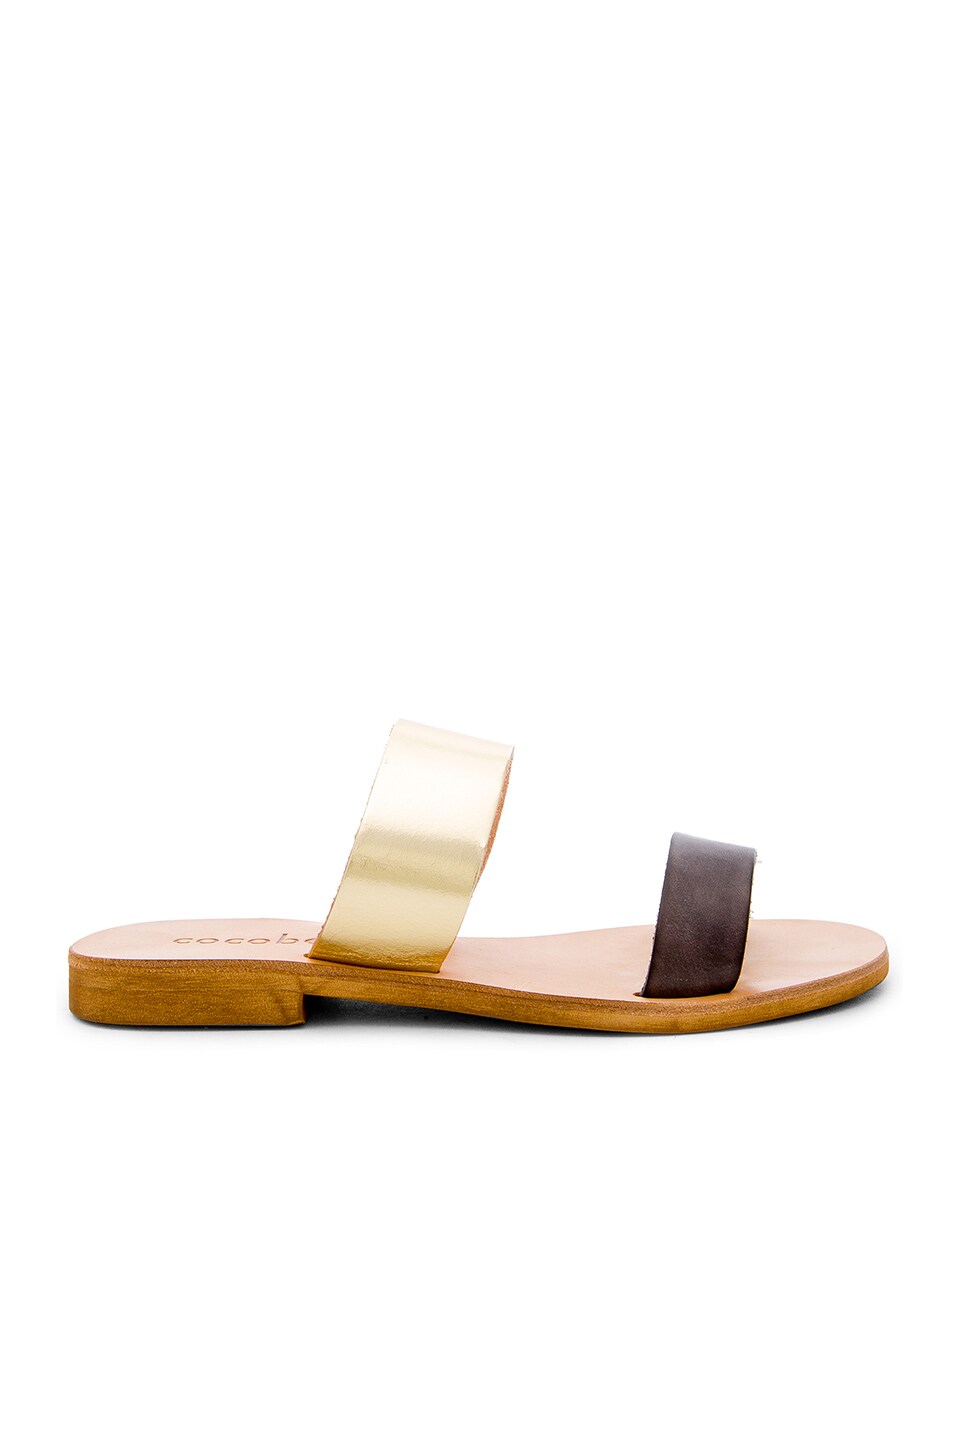 cocobelle leather slide sandals